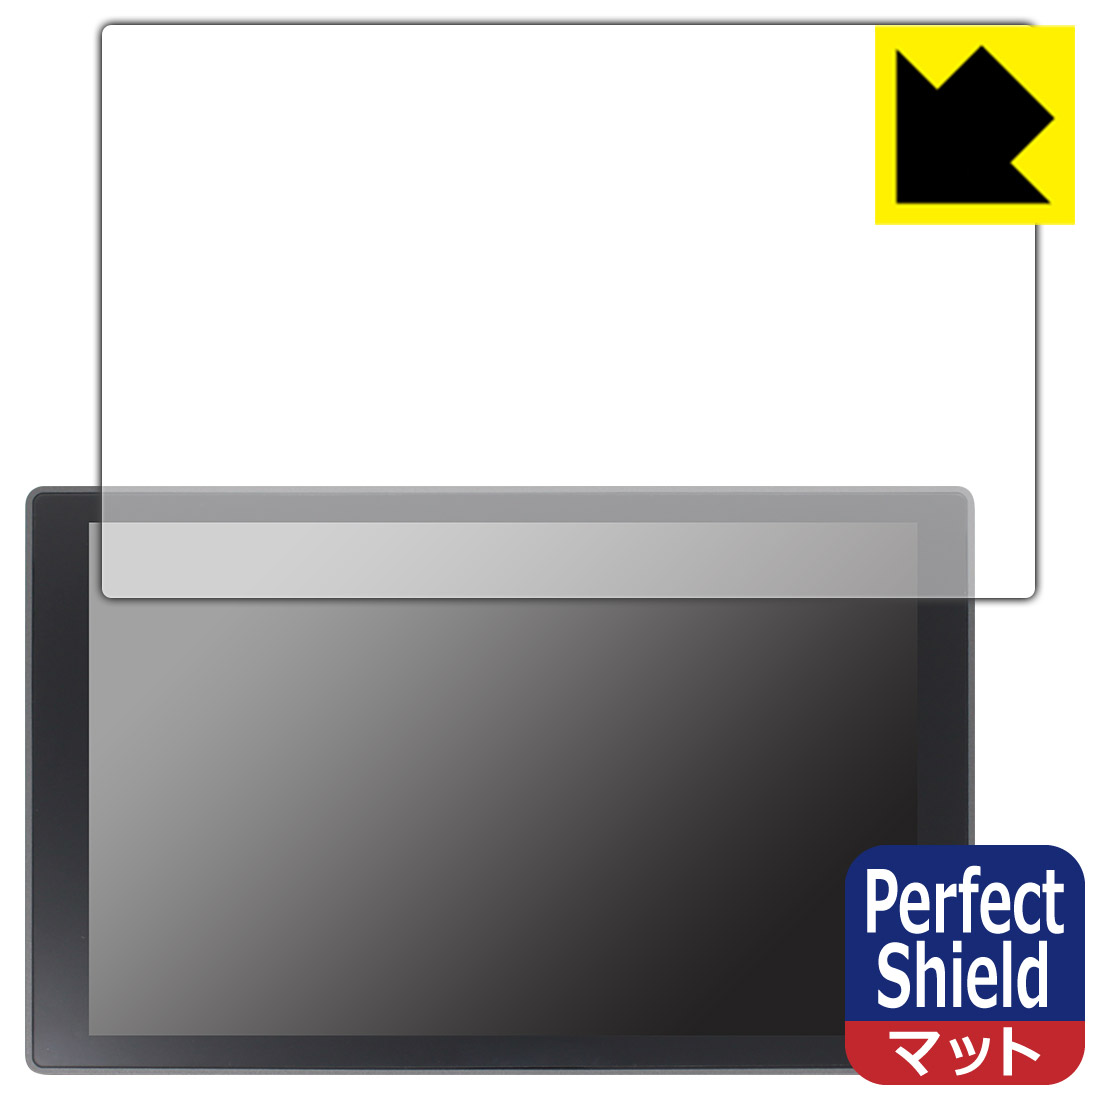 【驚きの値段で】 日本製 Perfect Shield保護フィルム LILLIPUT A11 10.1インチ 4Kカメラトップモニター 自社製造直販 ff-neuwuerschnitz.de ff-neuwuerschnitz.de